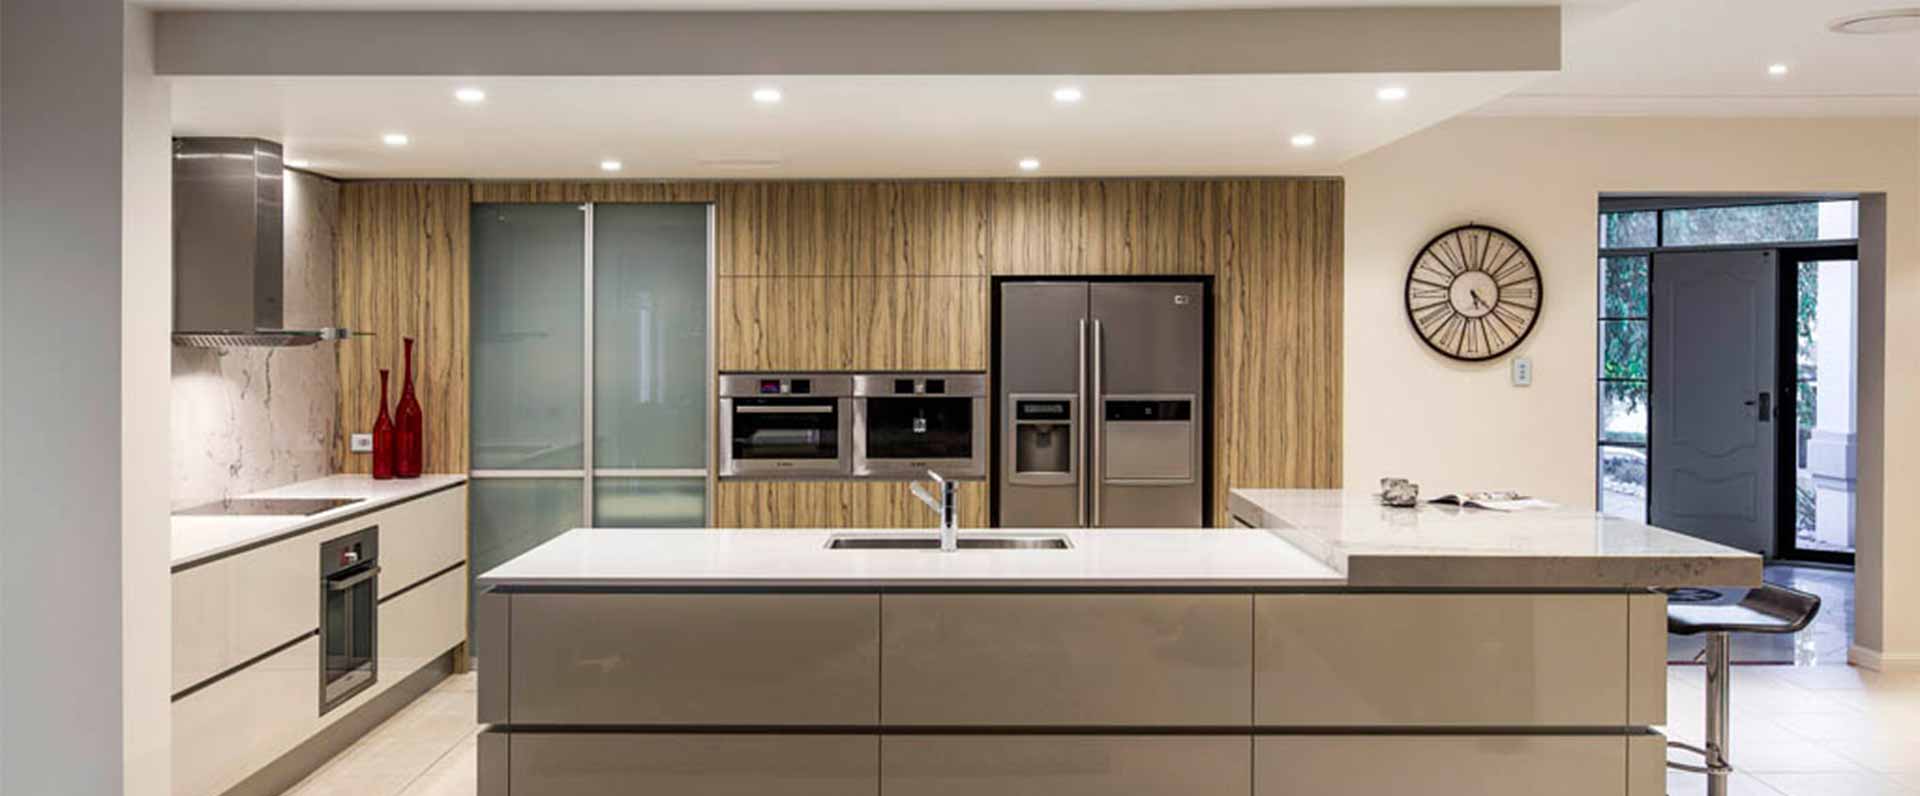 kitchen design sydney north shore